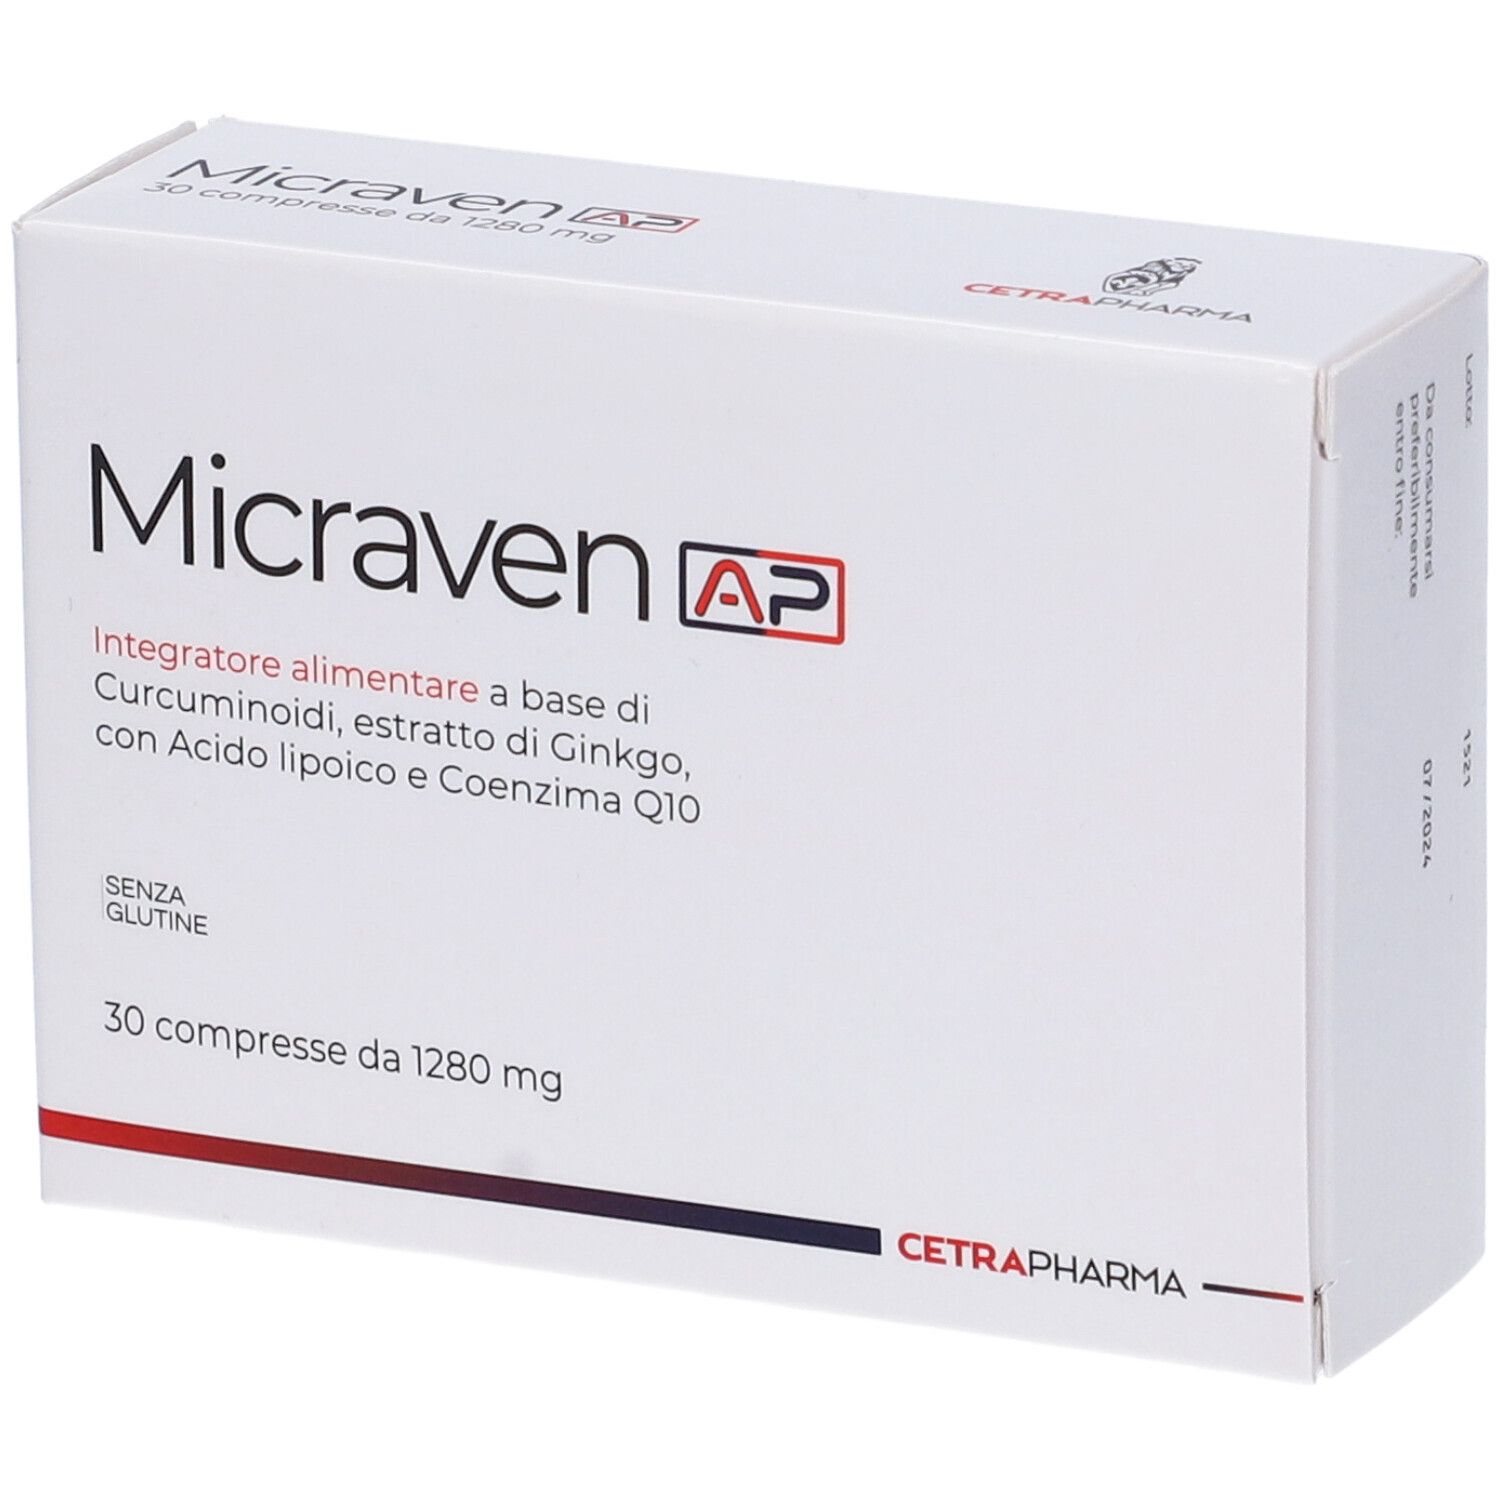 Micraven Ap 30 Compresse